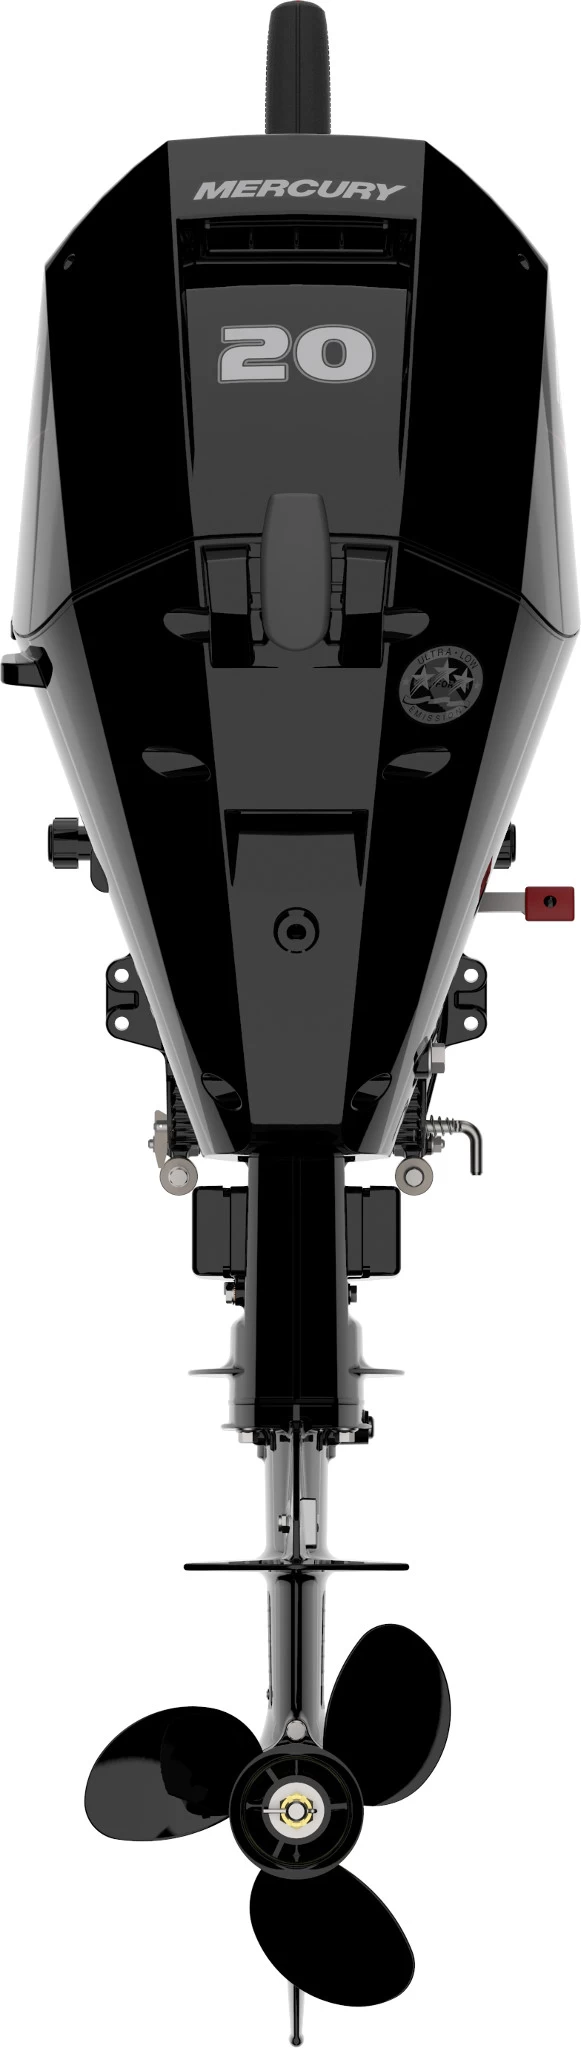 Четырехтактный лодочный мотор MERCURY F20 MLH - RedTail - 2